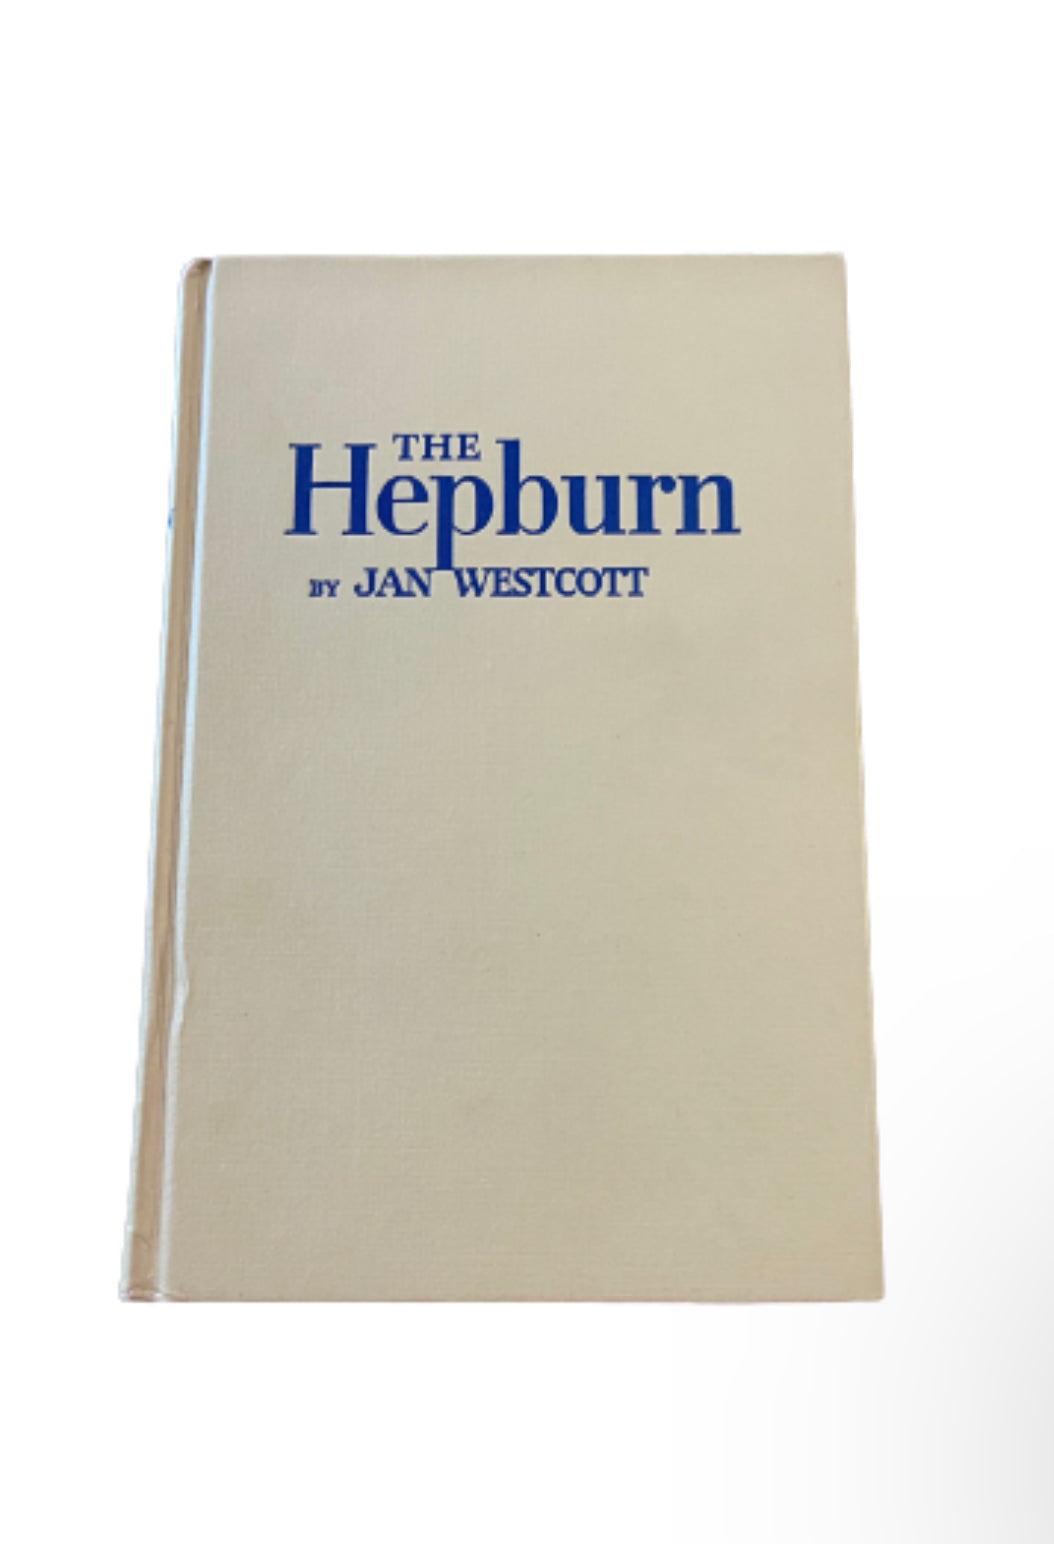 The Hepburn by Jan Westcott